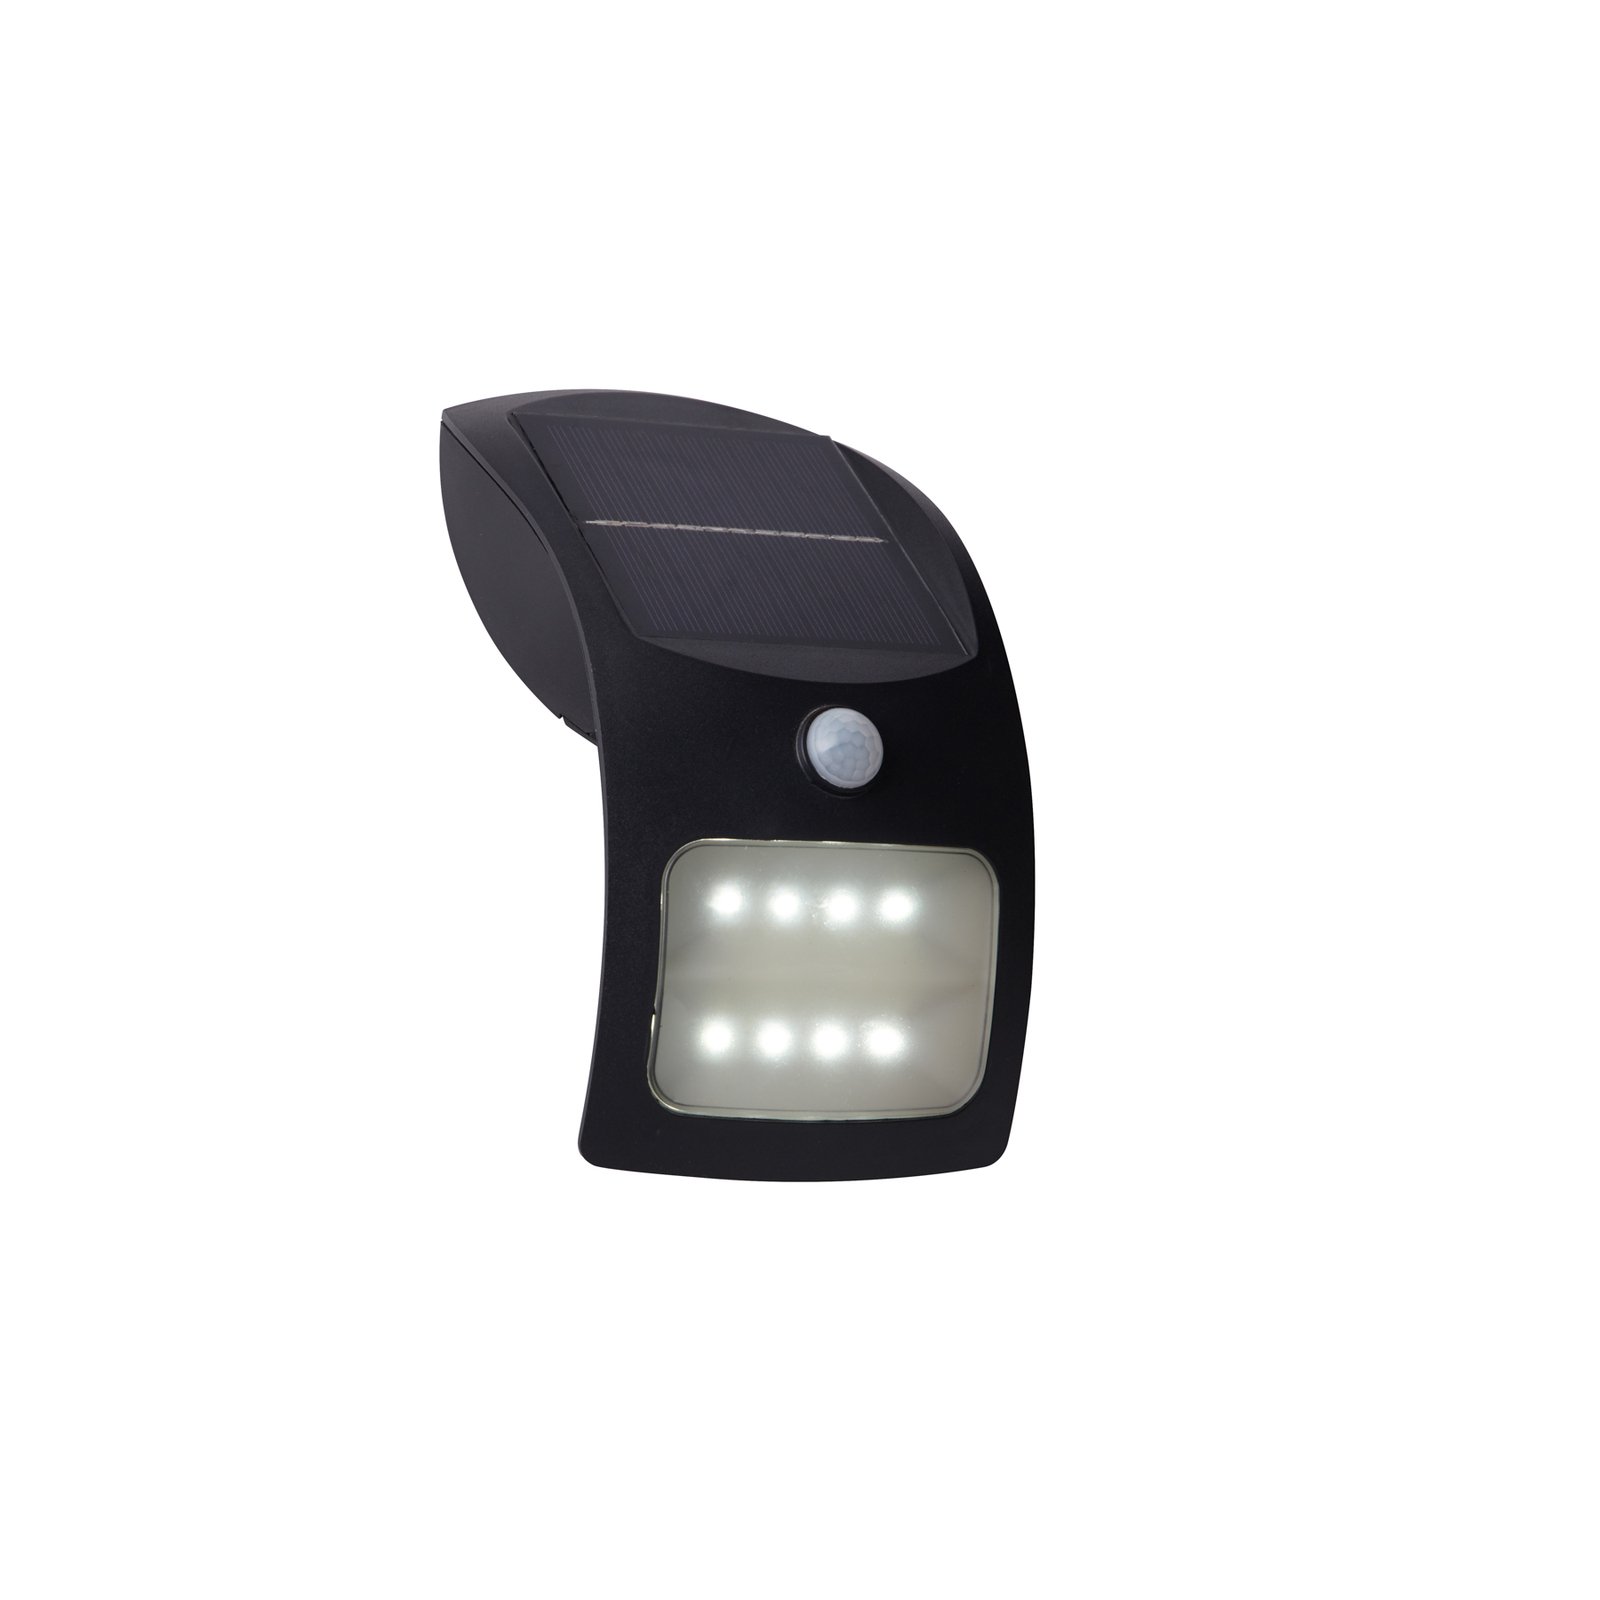 LED wall light 67420BK-PIR, motion detector